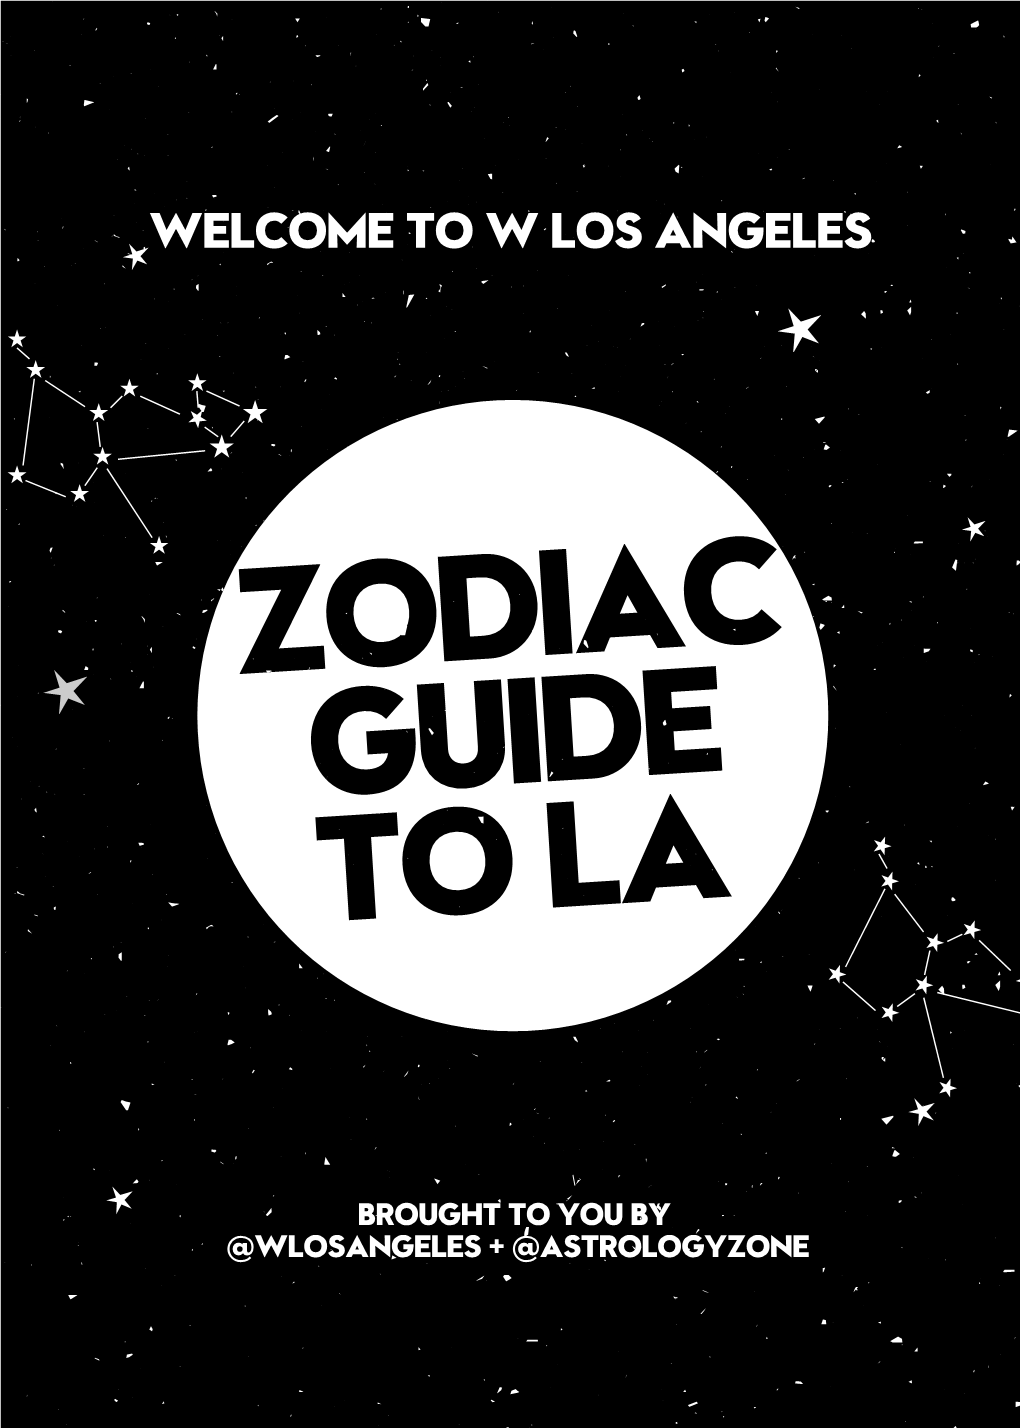 Zodiac Guide to La